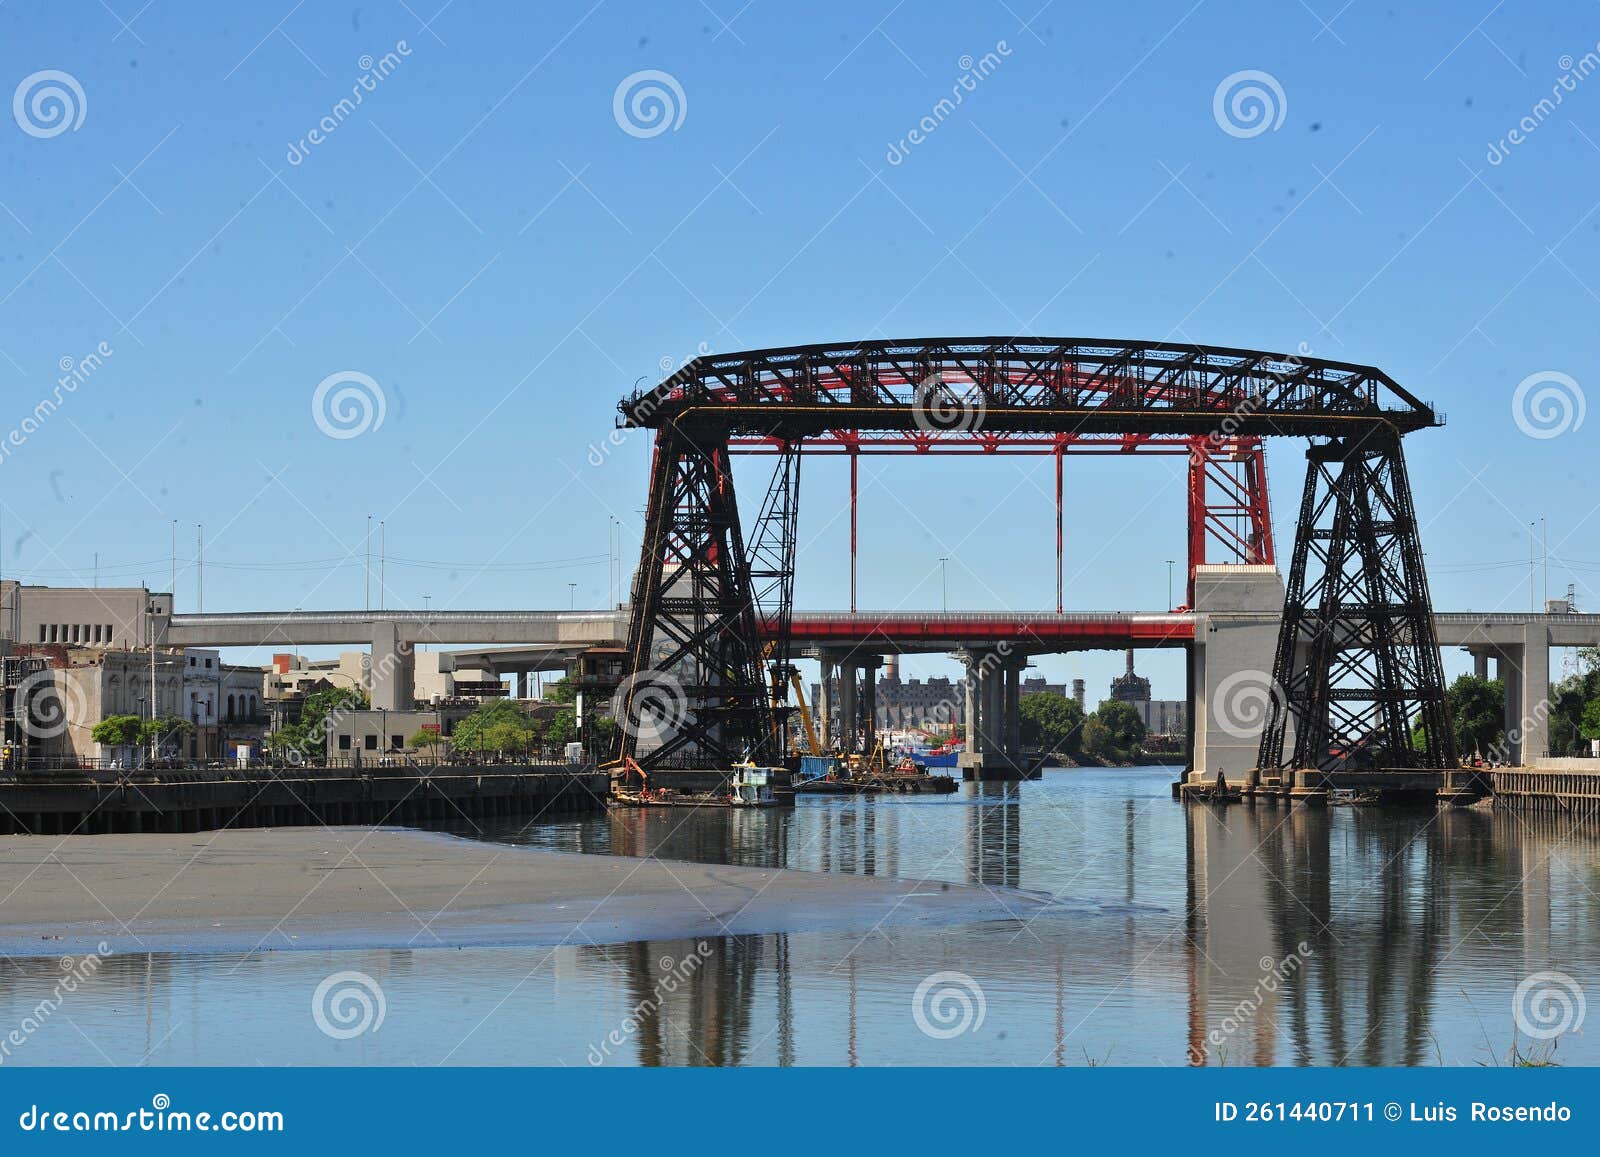 buenos aires argentina -old nicolas avellaneda steel bridge across riachuelo in la boca, buenos aires argentina